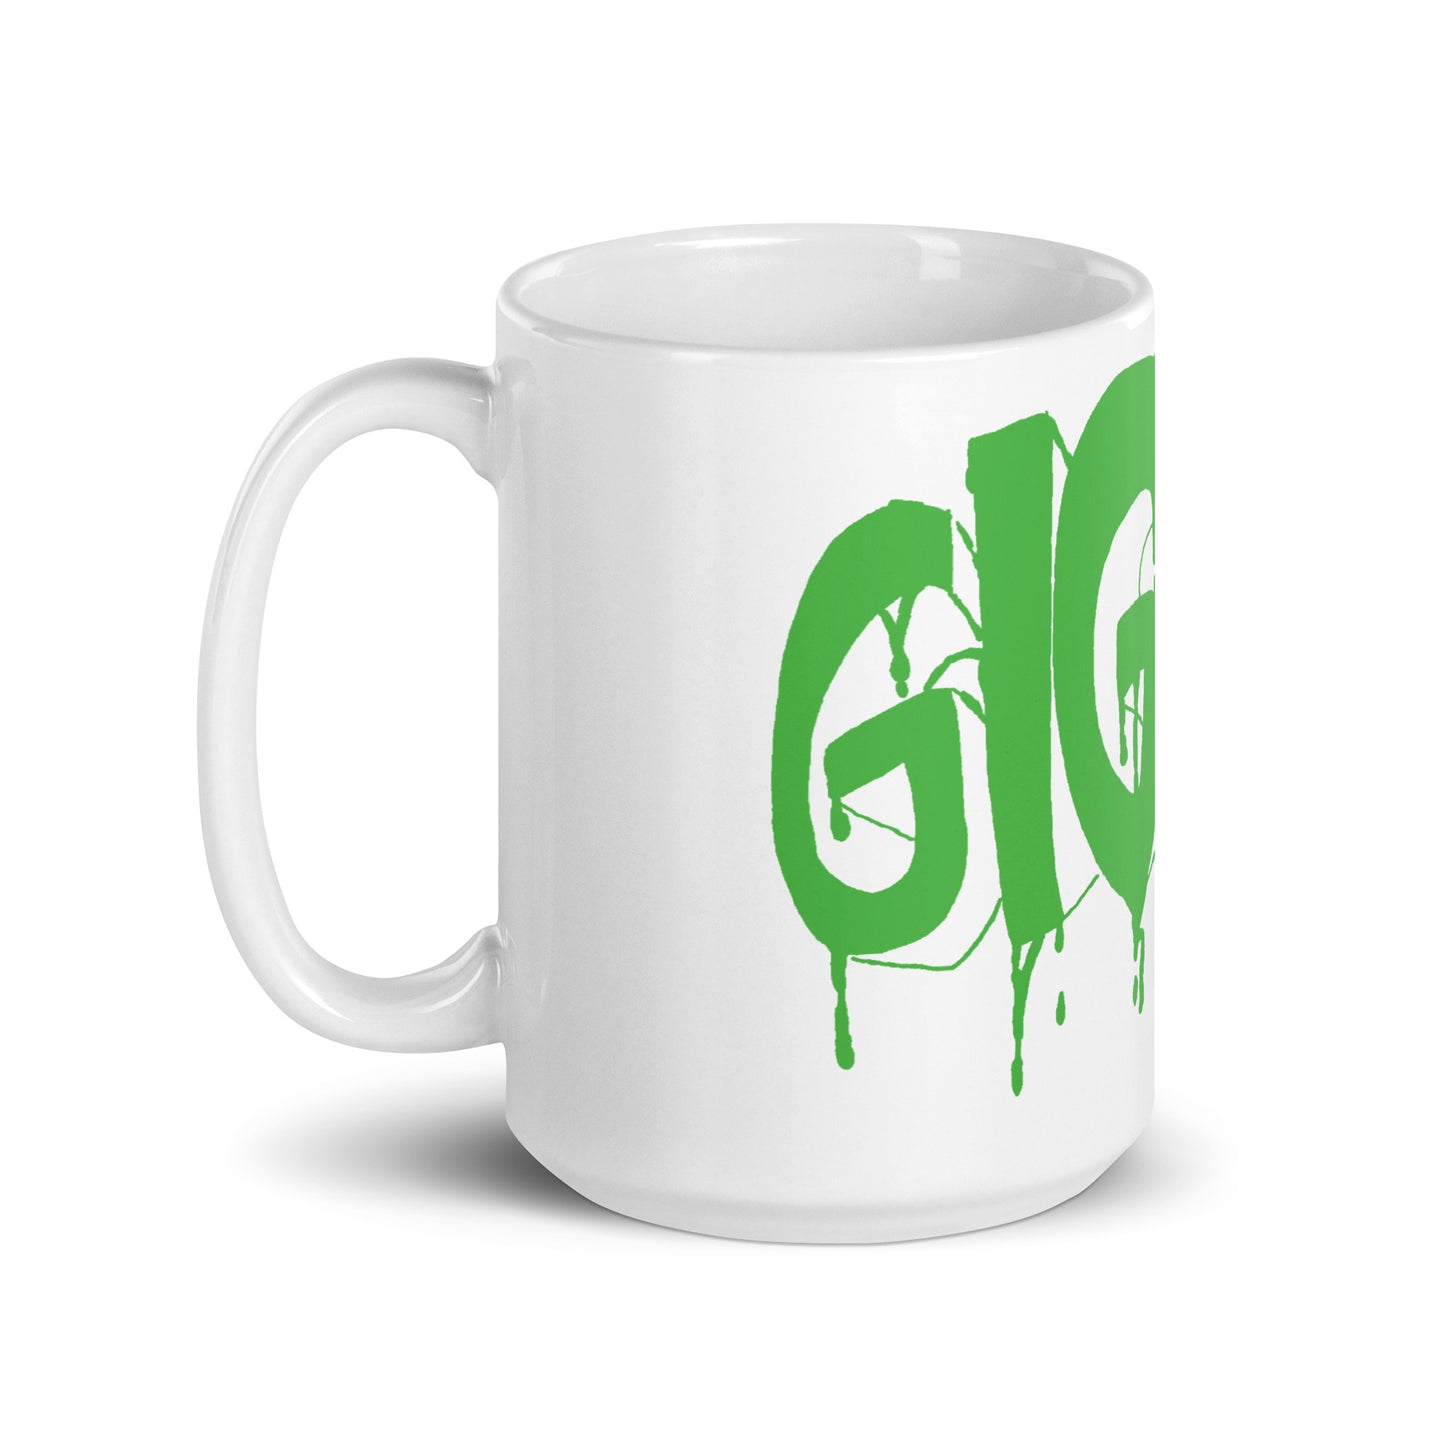 Gig Work white glossy mug